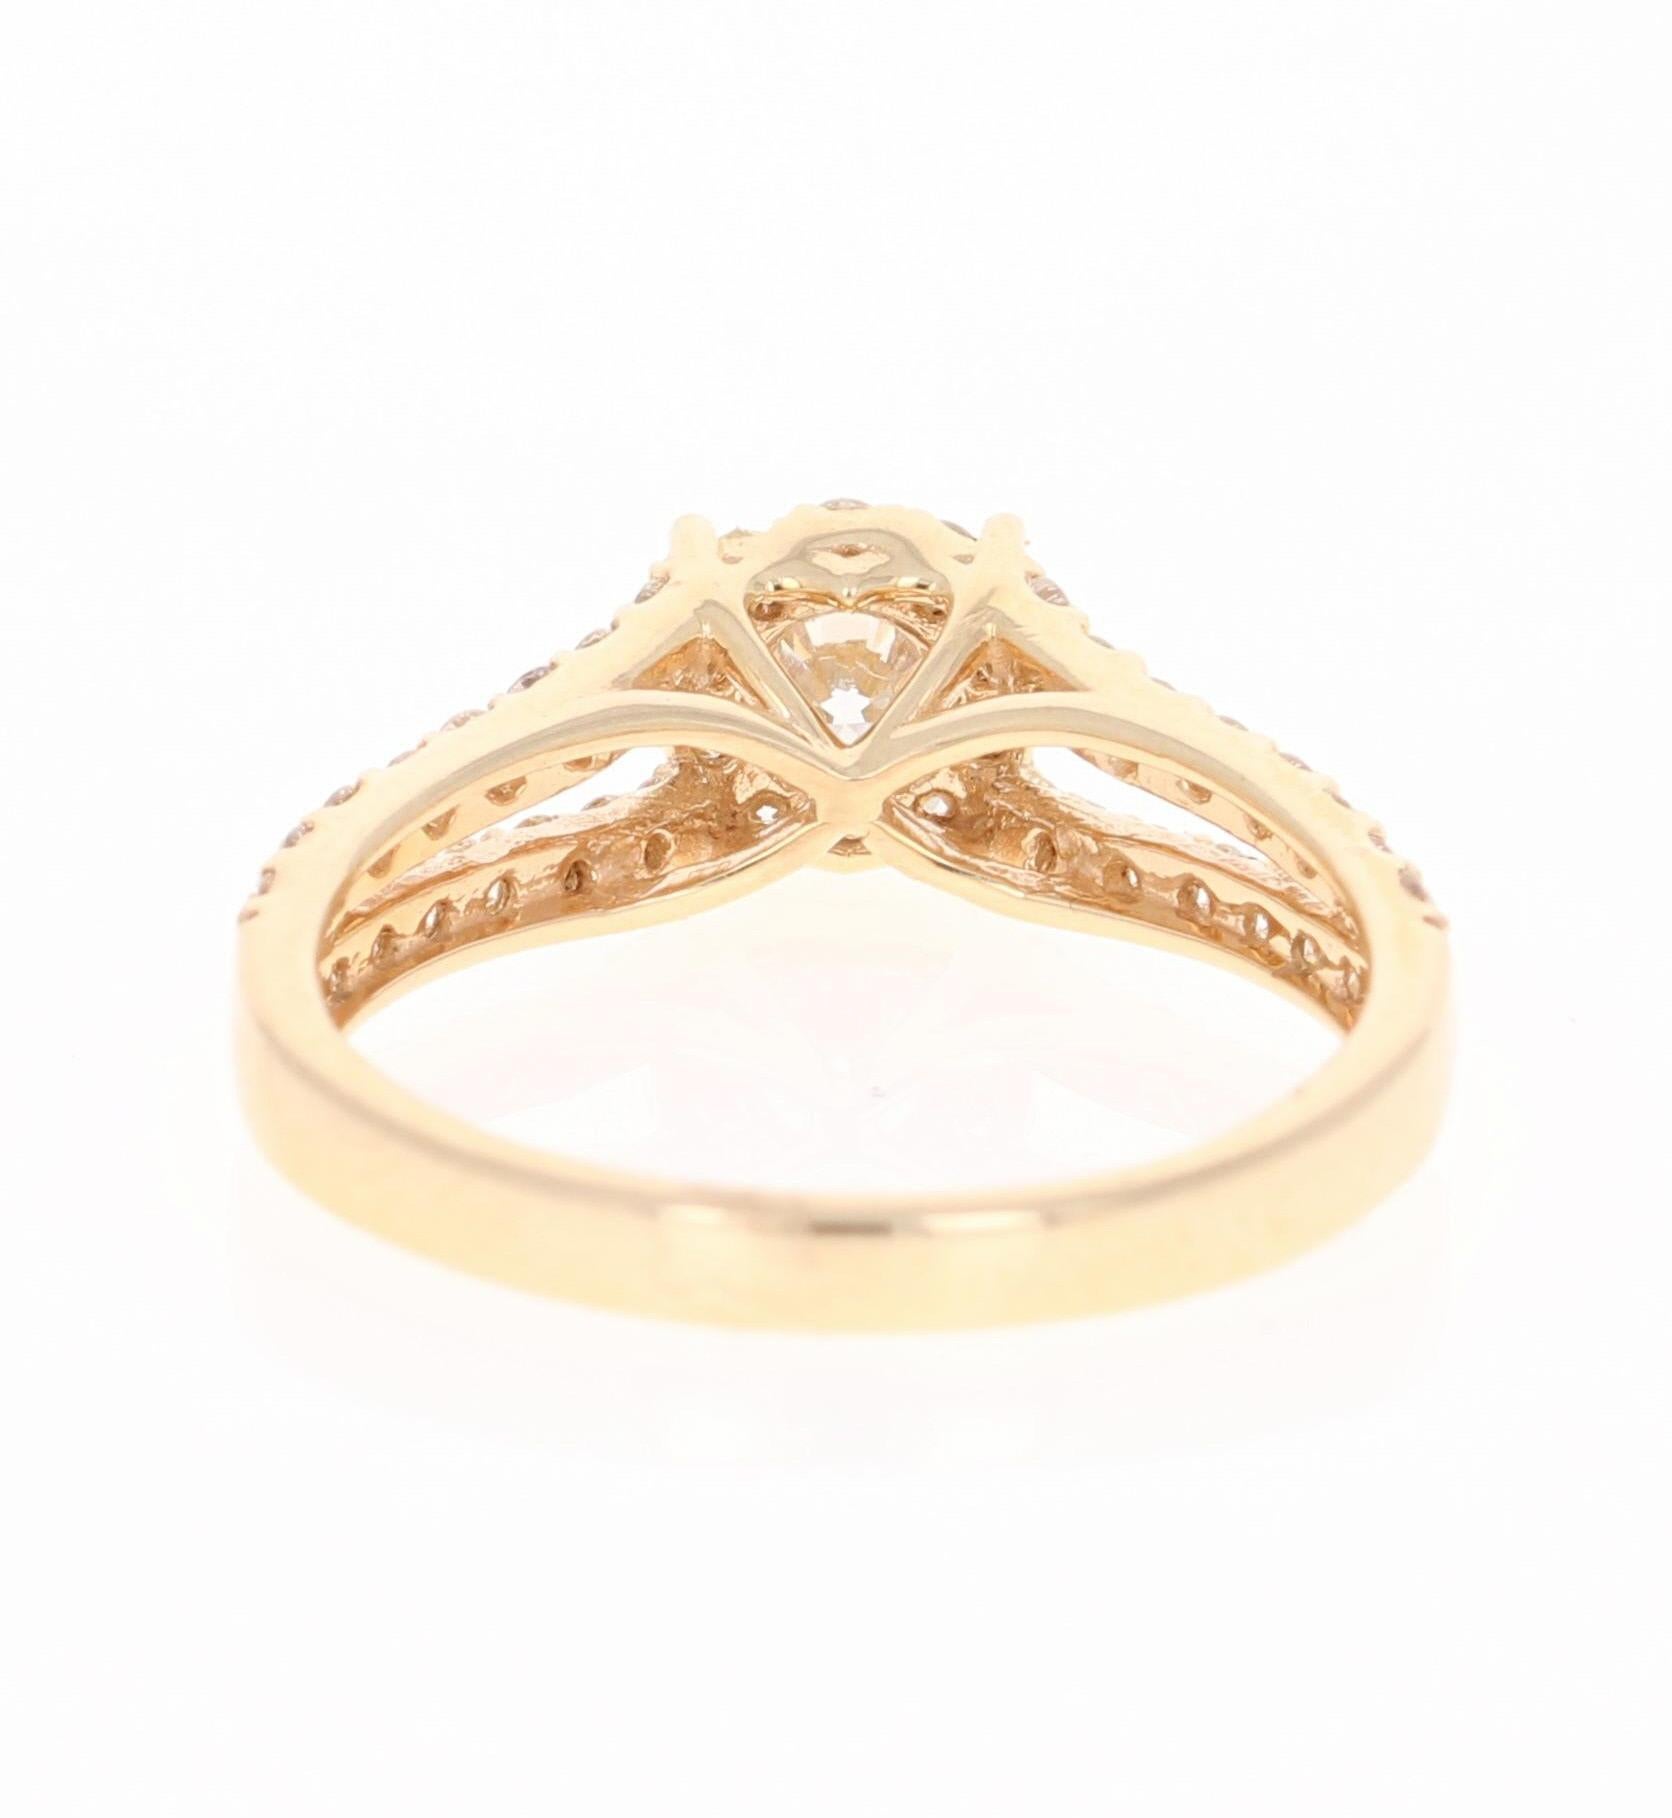 Round Cut 0.98 Carat Diamond 14 Karat Yellow Gold Bridal Ring